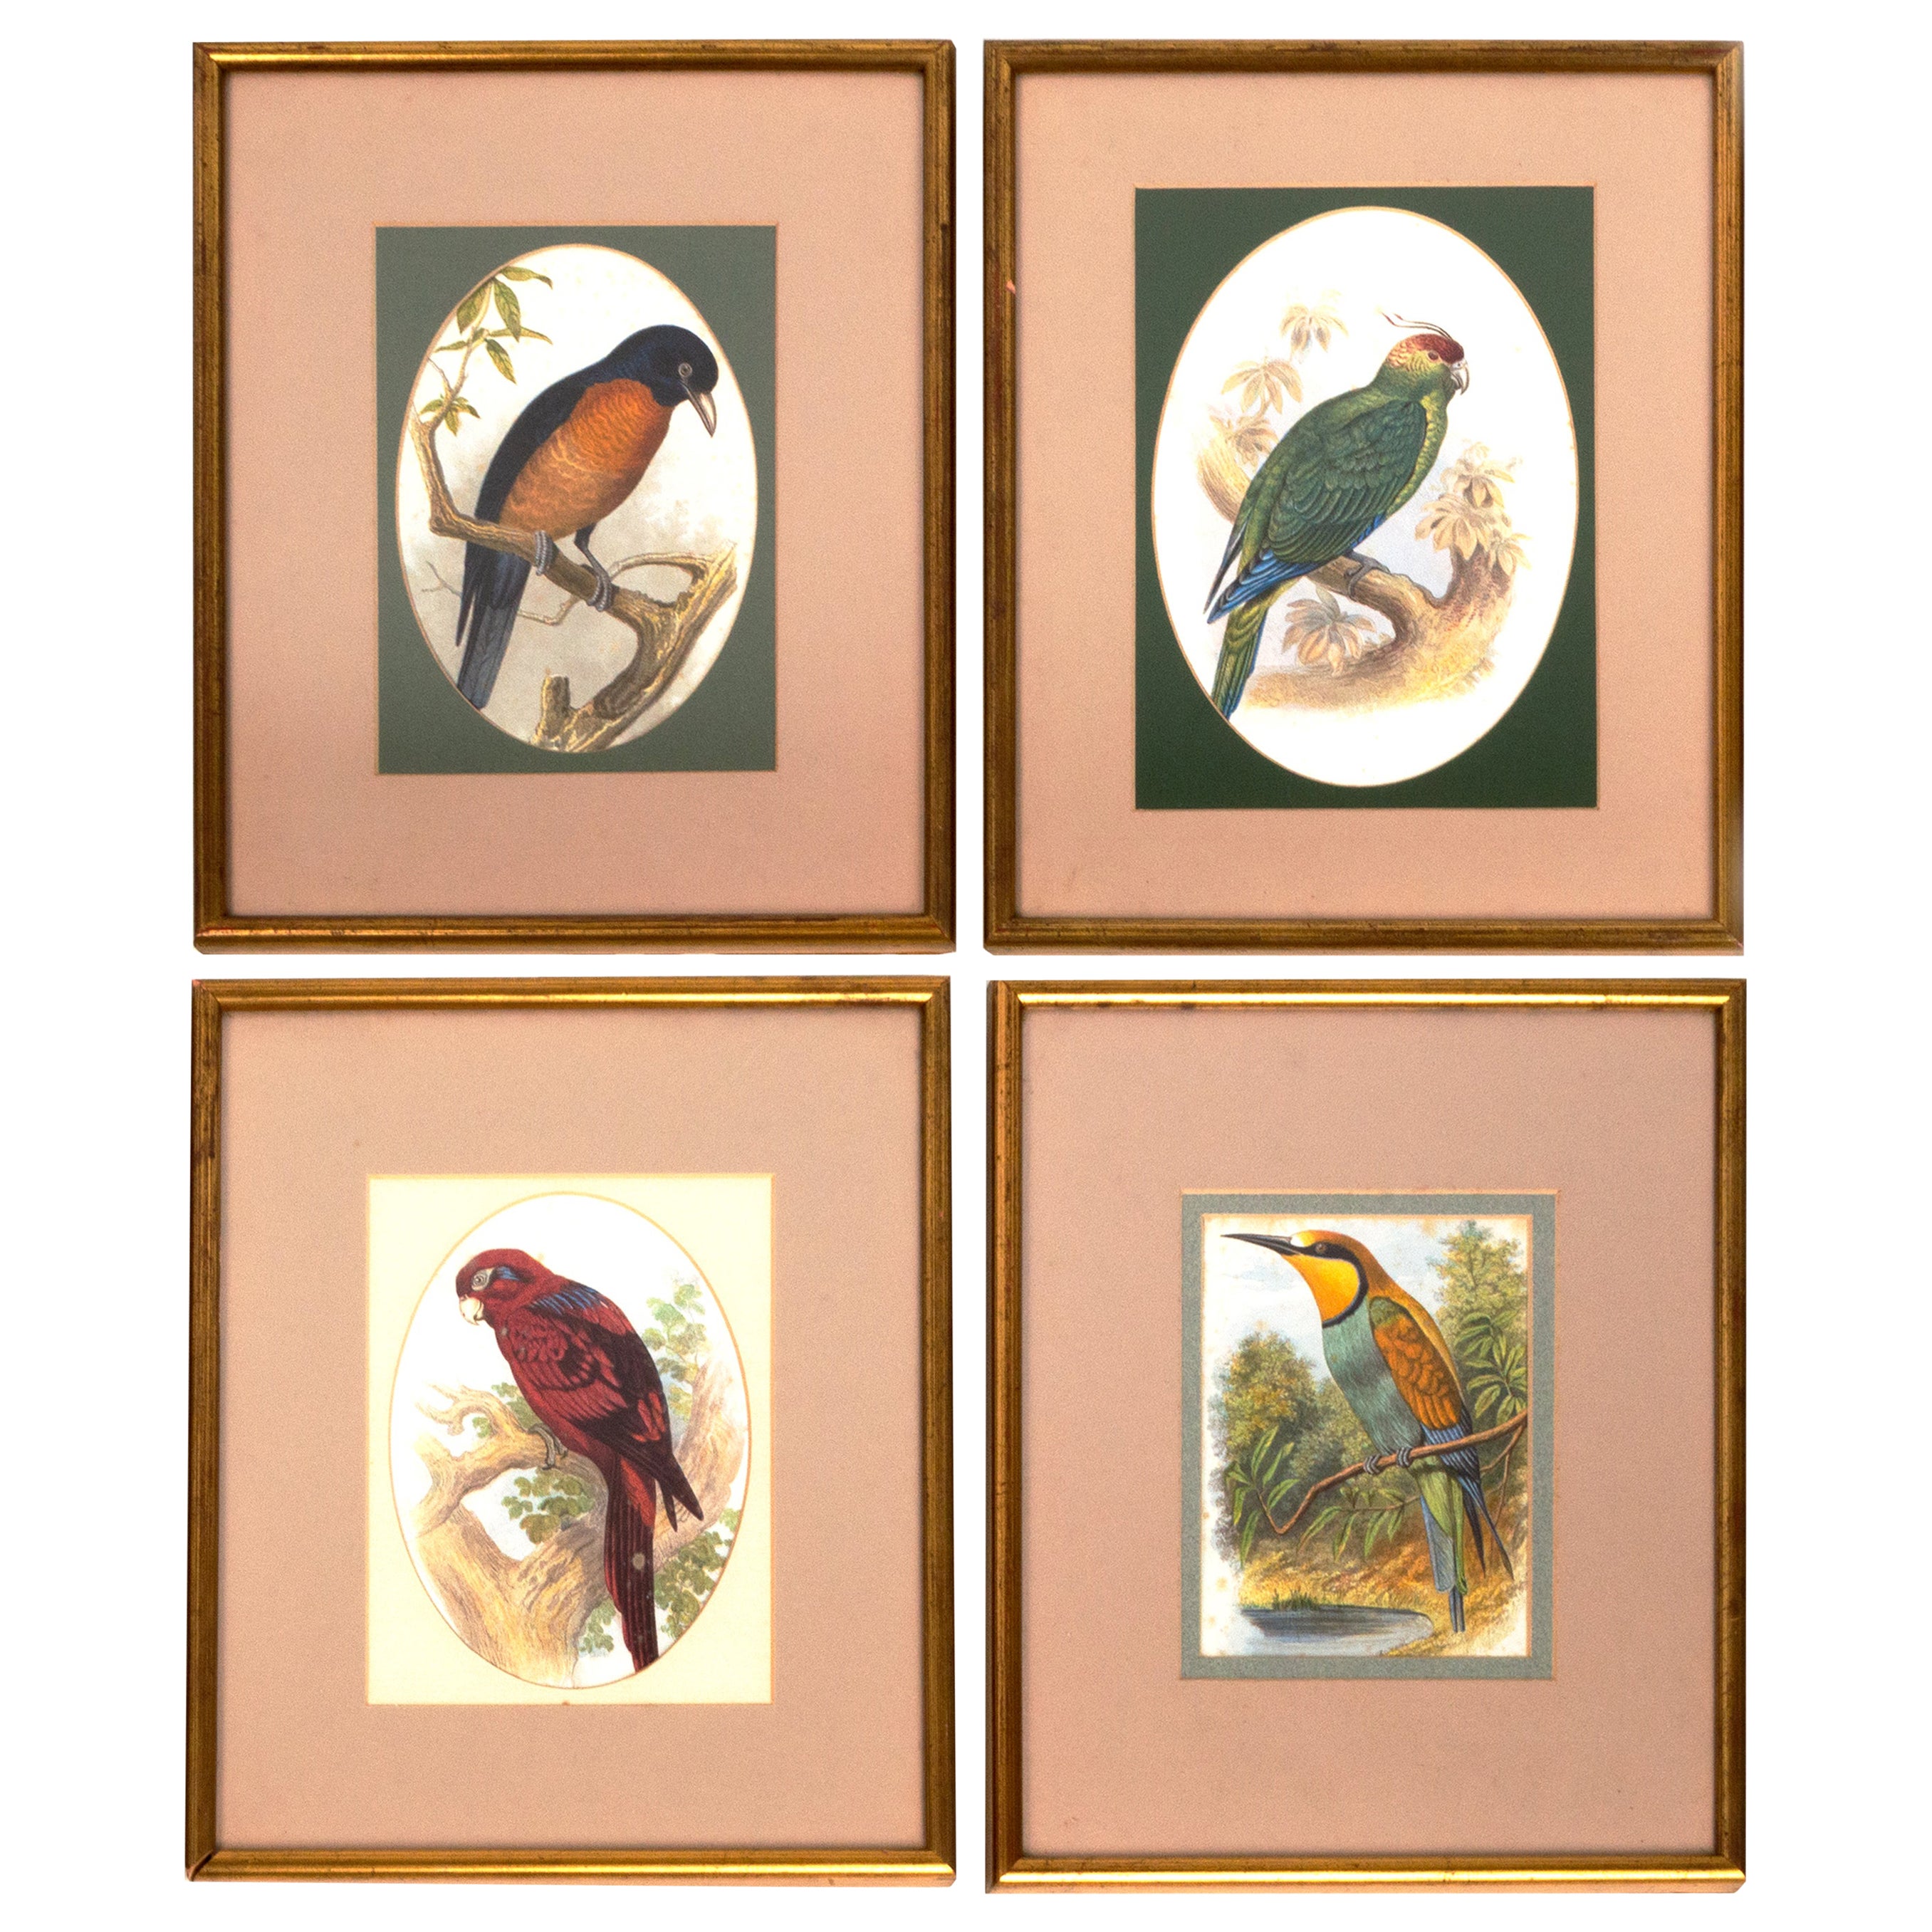 Quatre estampes ornithologiques victoriennes anciennes de John Gould Angleterre, vers 1875